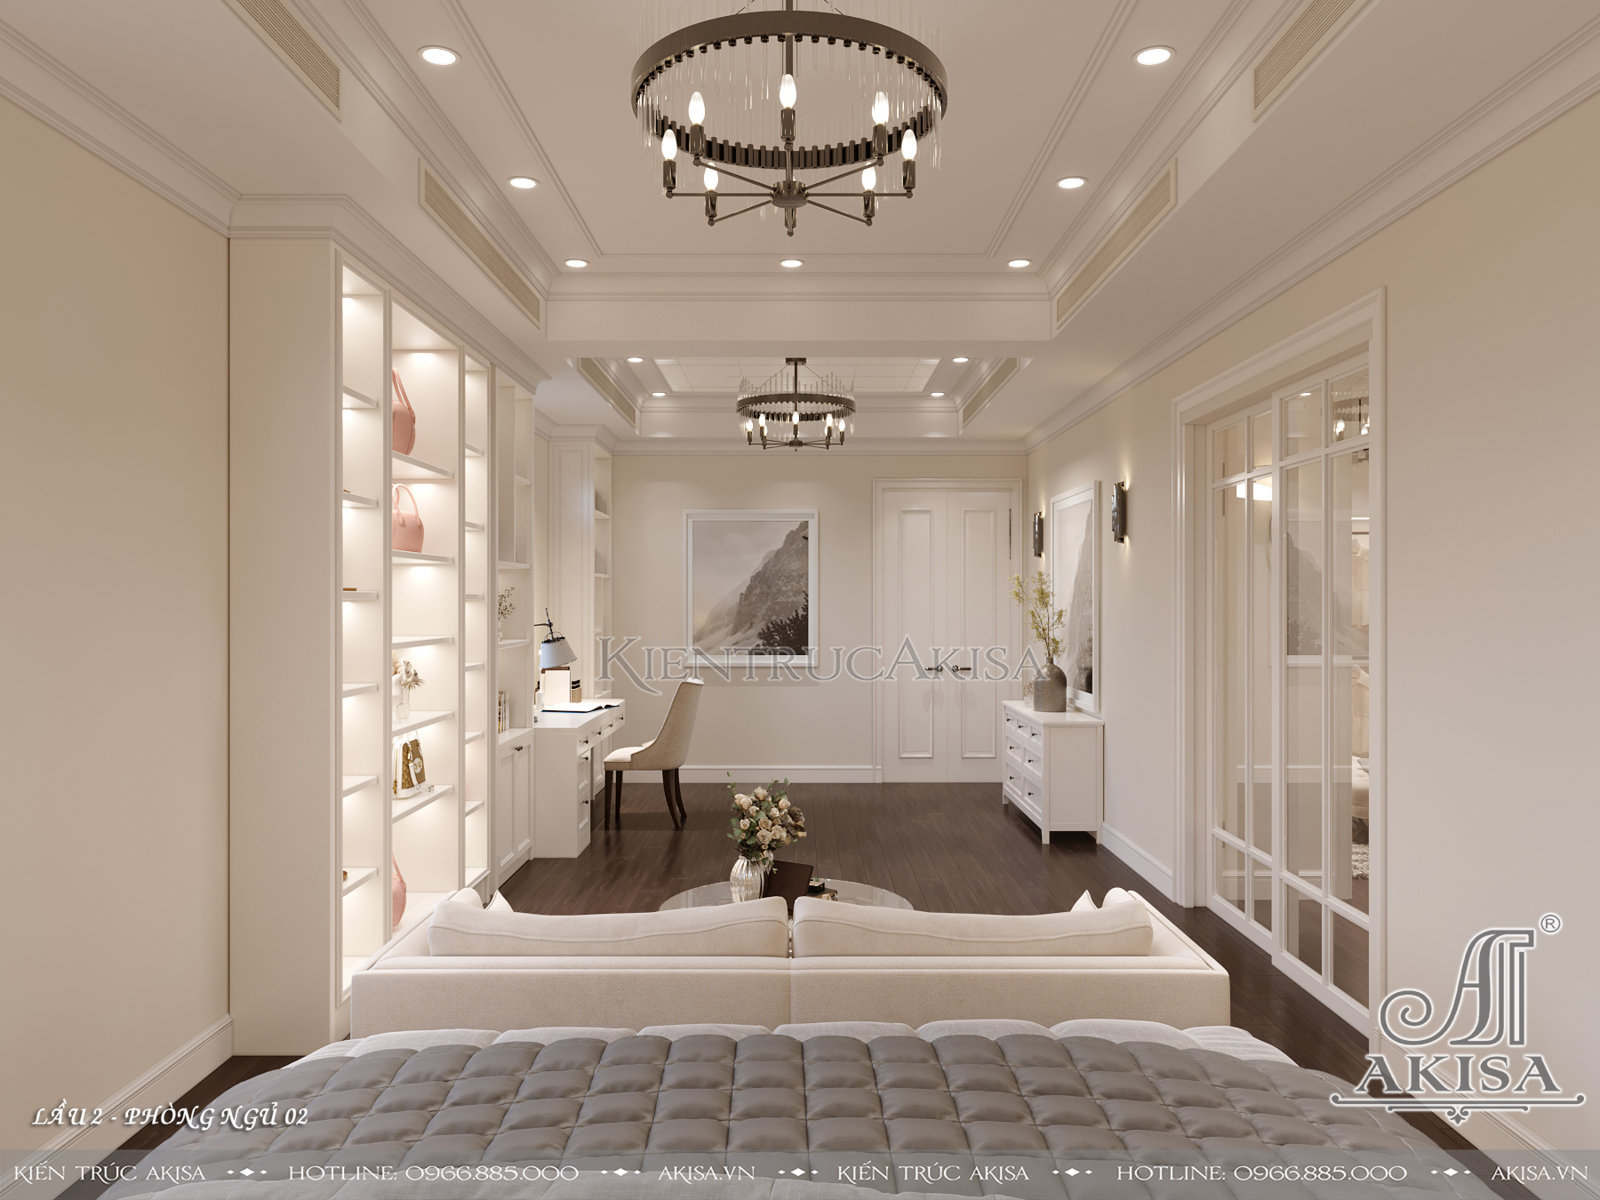 Mẫu nội thất biệt thự phong cách Art Deco thời thượng - Phòng ngủ